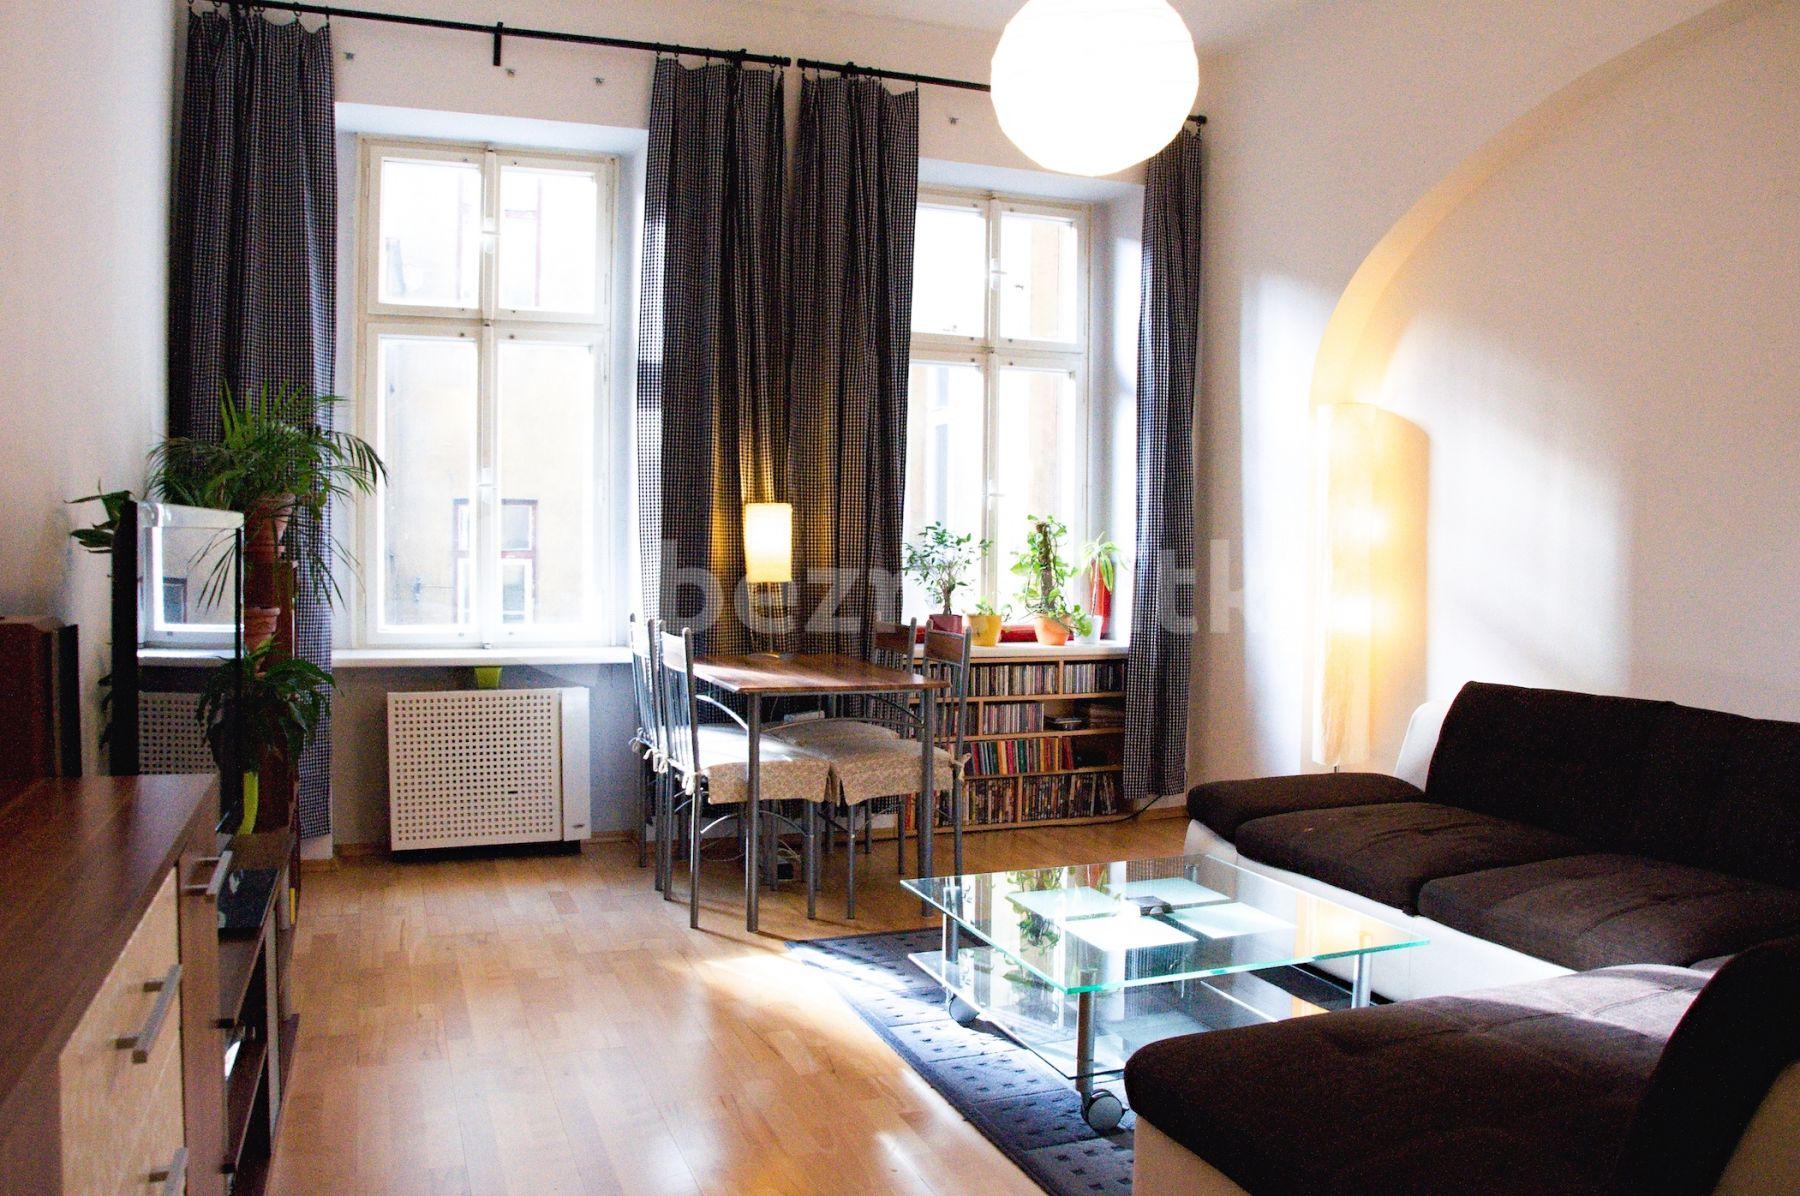 2 bedroom flat to rent, 60 m², Pernerova, Prague, Prague